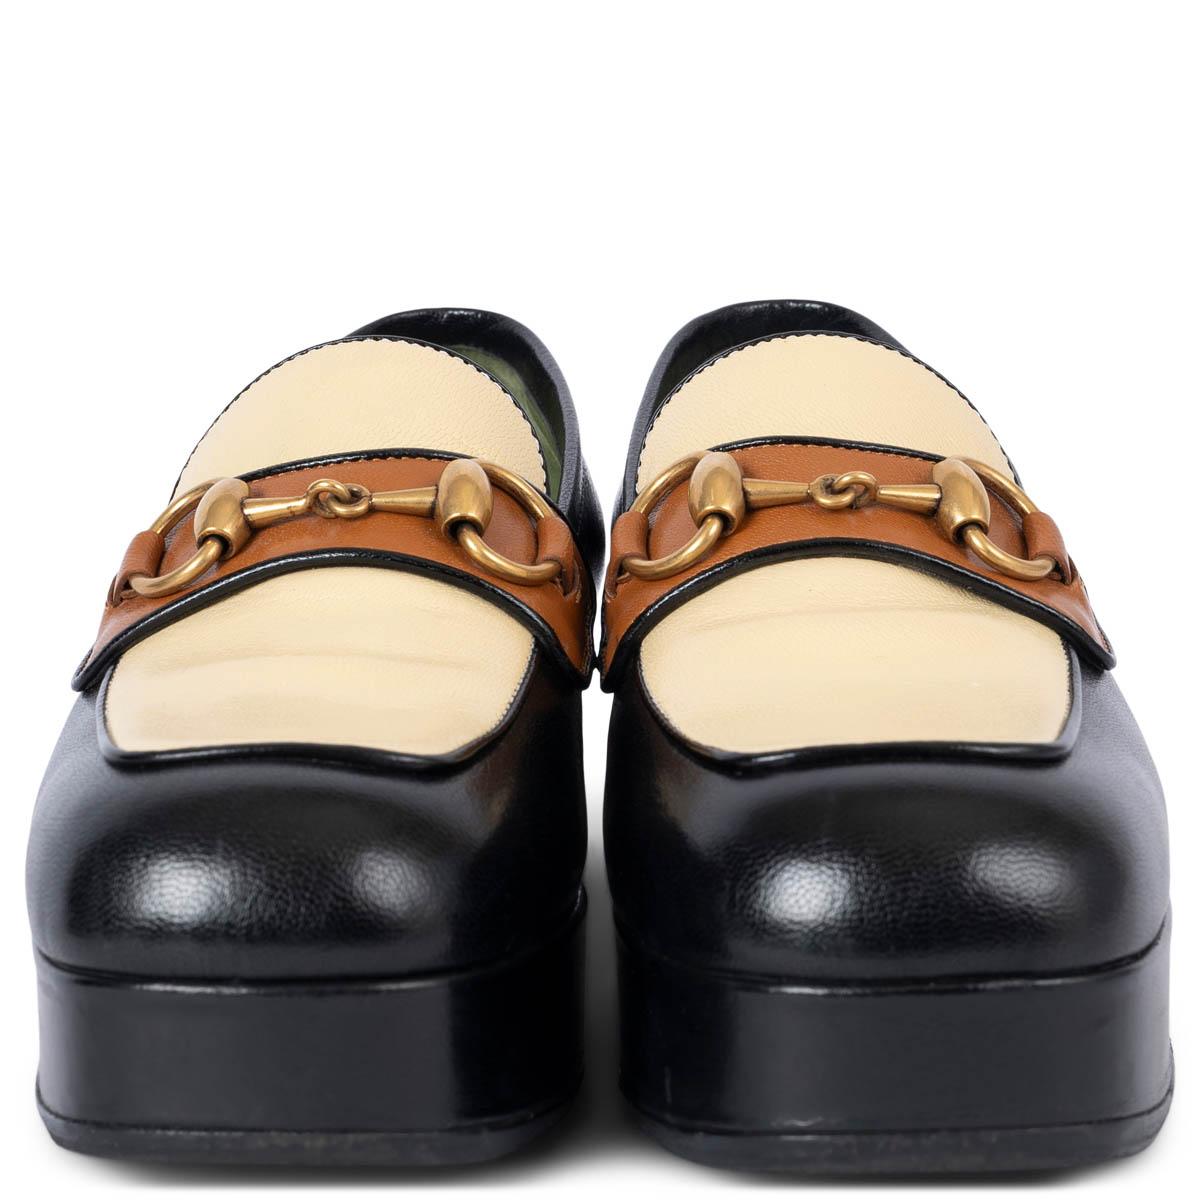 100% authentische Gucci 2019 Hosebit Plateau-Loafer aus schwarzem, cremefarbenem und braunem Glattleder. Sie wurden getragen und sind in ausgezeichnetem Zustand. Es wurden schwarze Gummisohlen hinzugefügt. Kommt mit Staubbeutel.